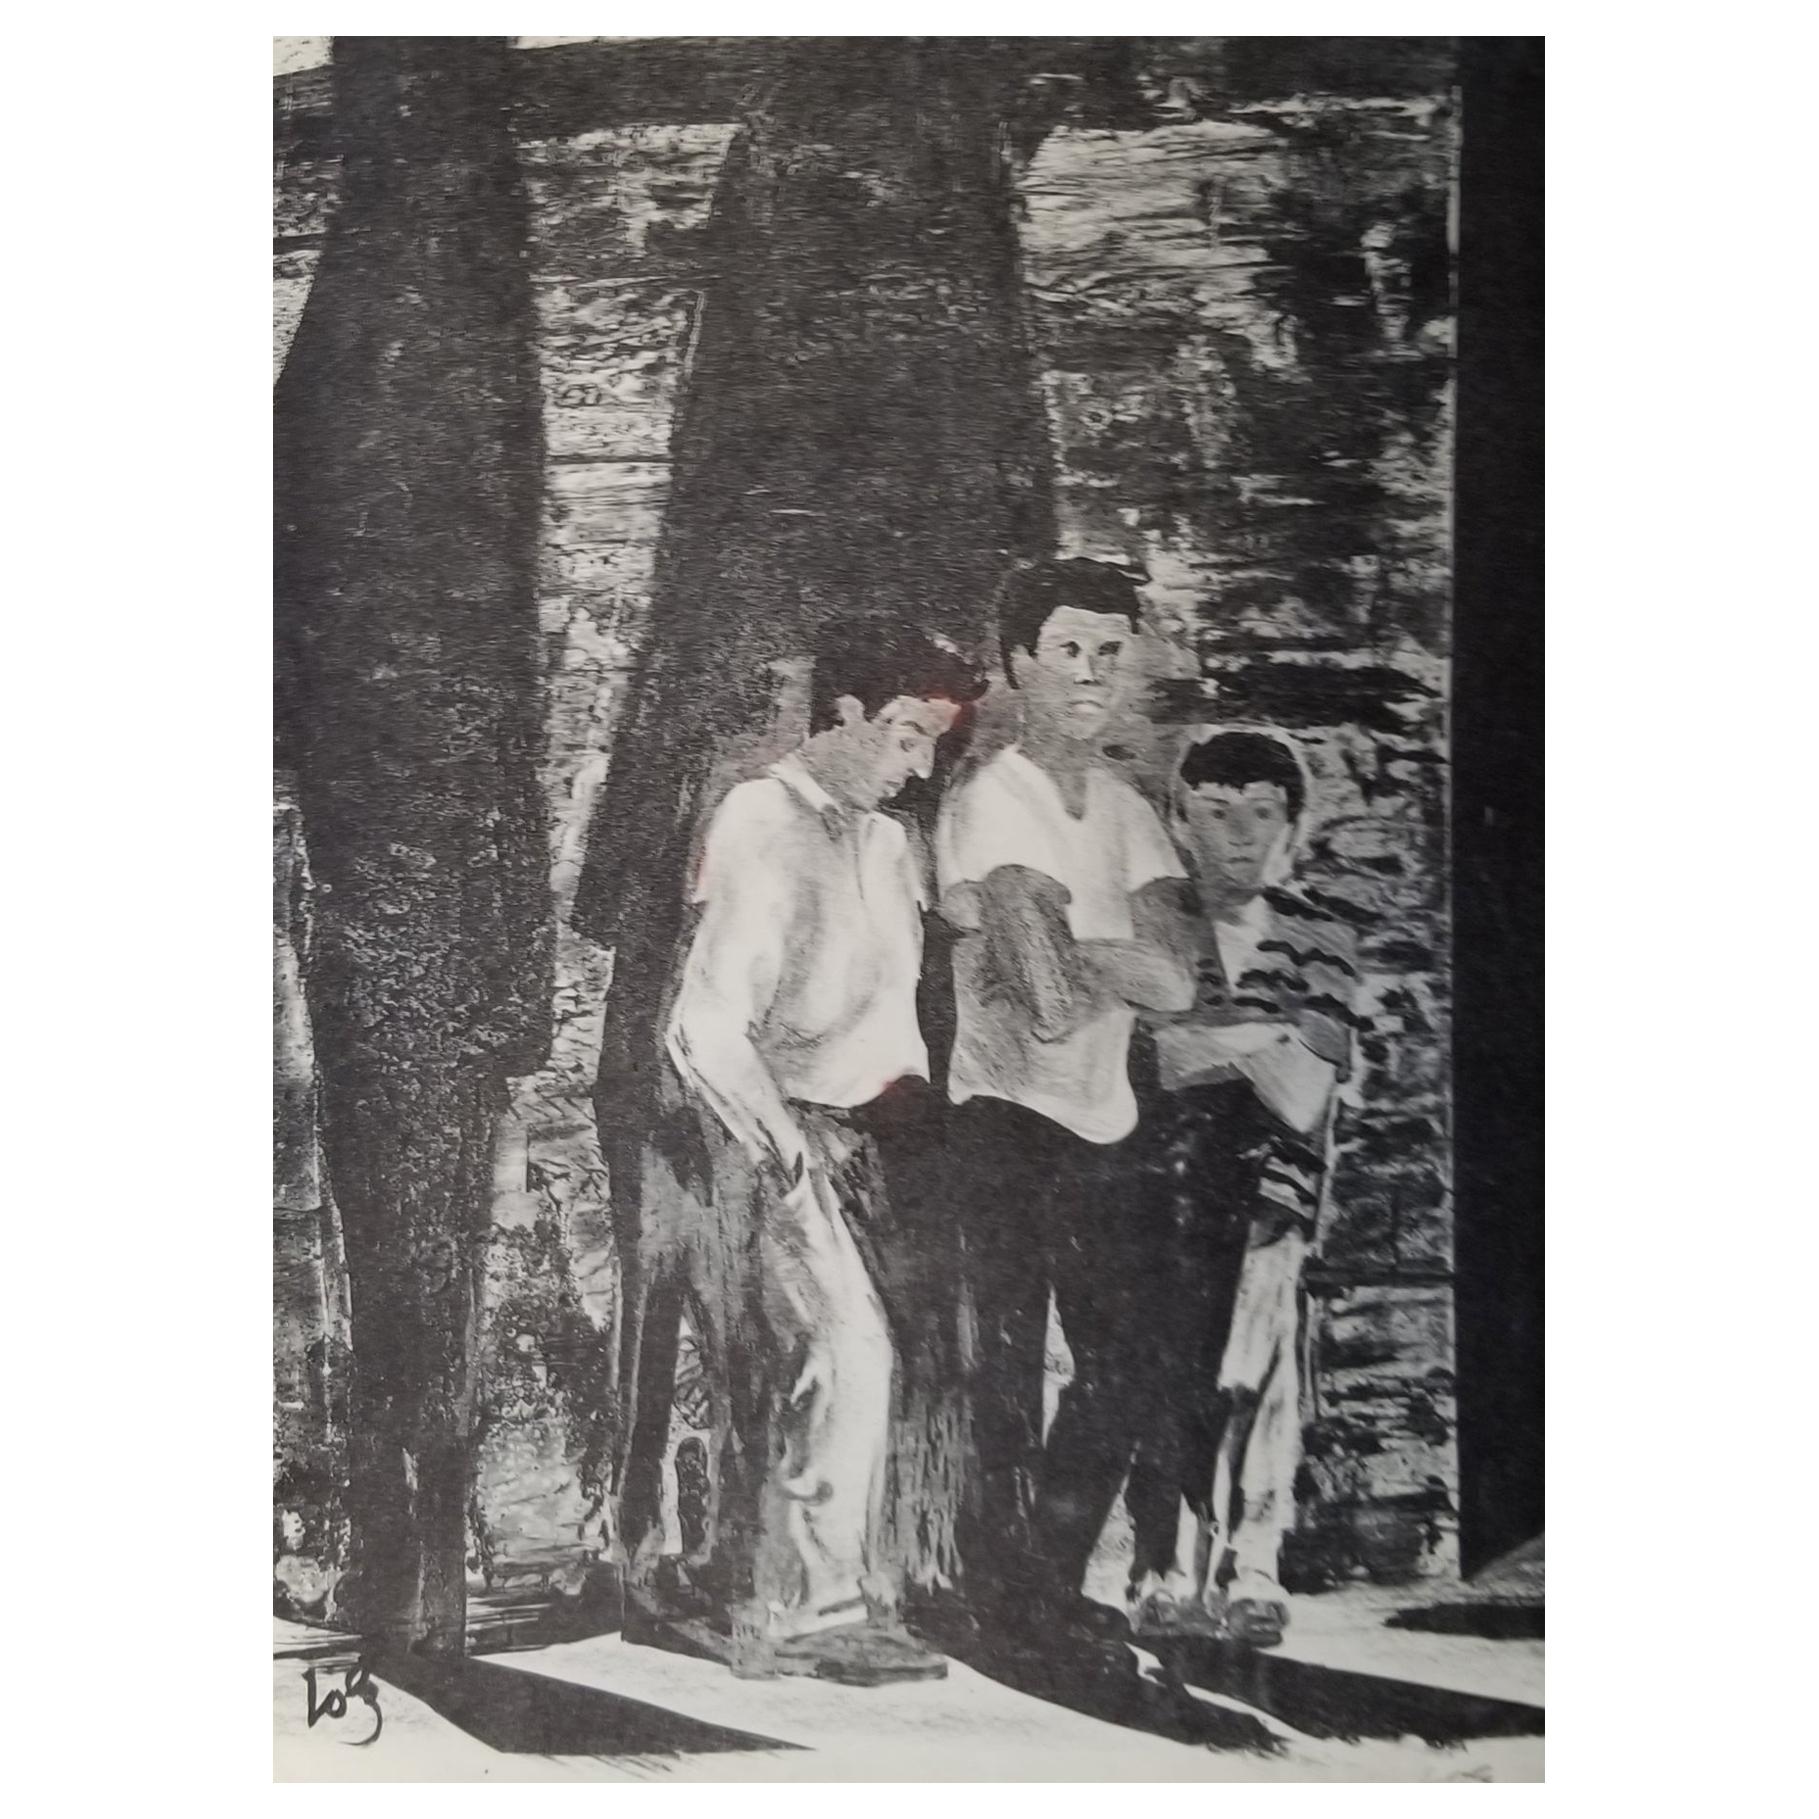 Lithographie en noir et blanc par Herman Roderick Volz de 3 personnages debout, Circa 1960's. Signé au crayon. Non encadré.

Œuvres détenues : National Gallery of Art. Musée d'art Crystal Bridges. Musée des beaux-arts de San